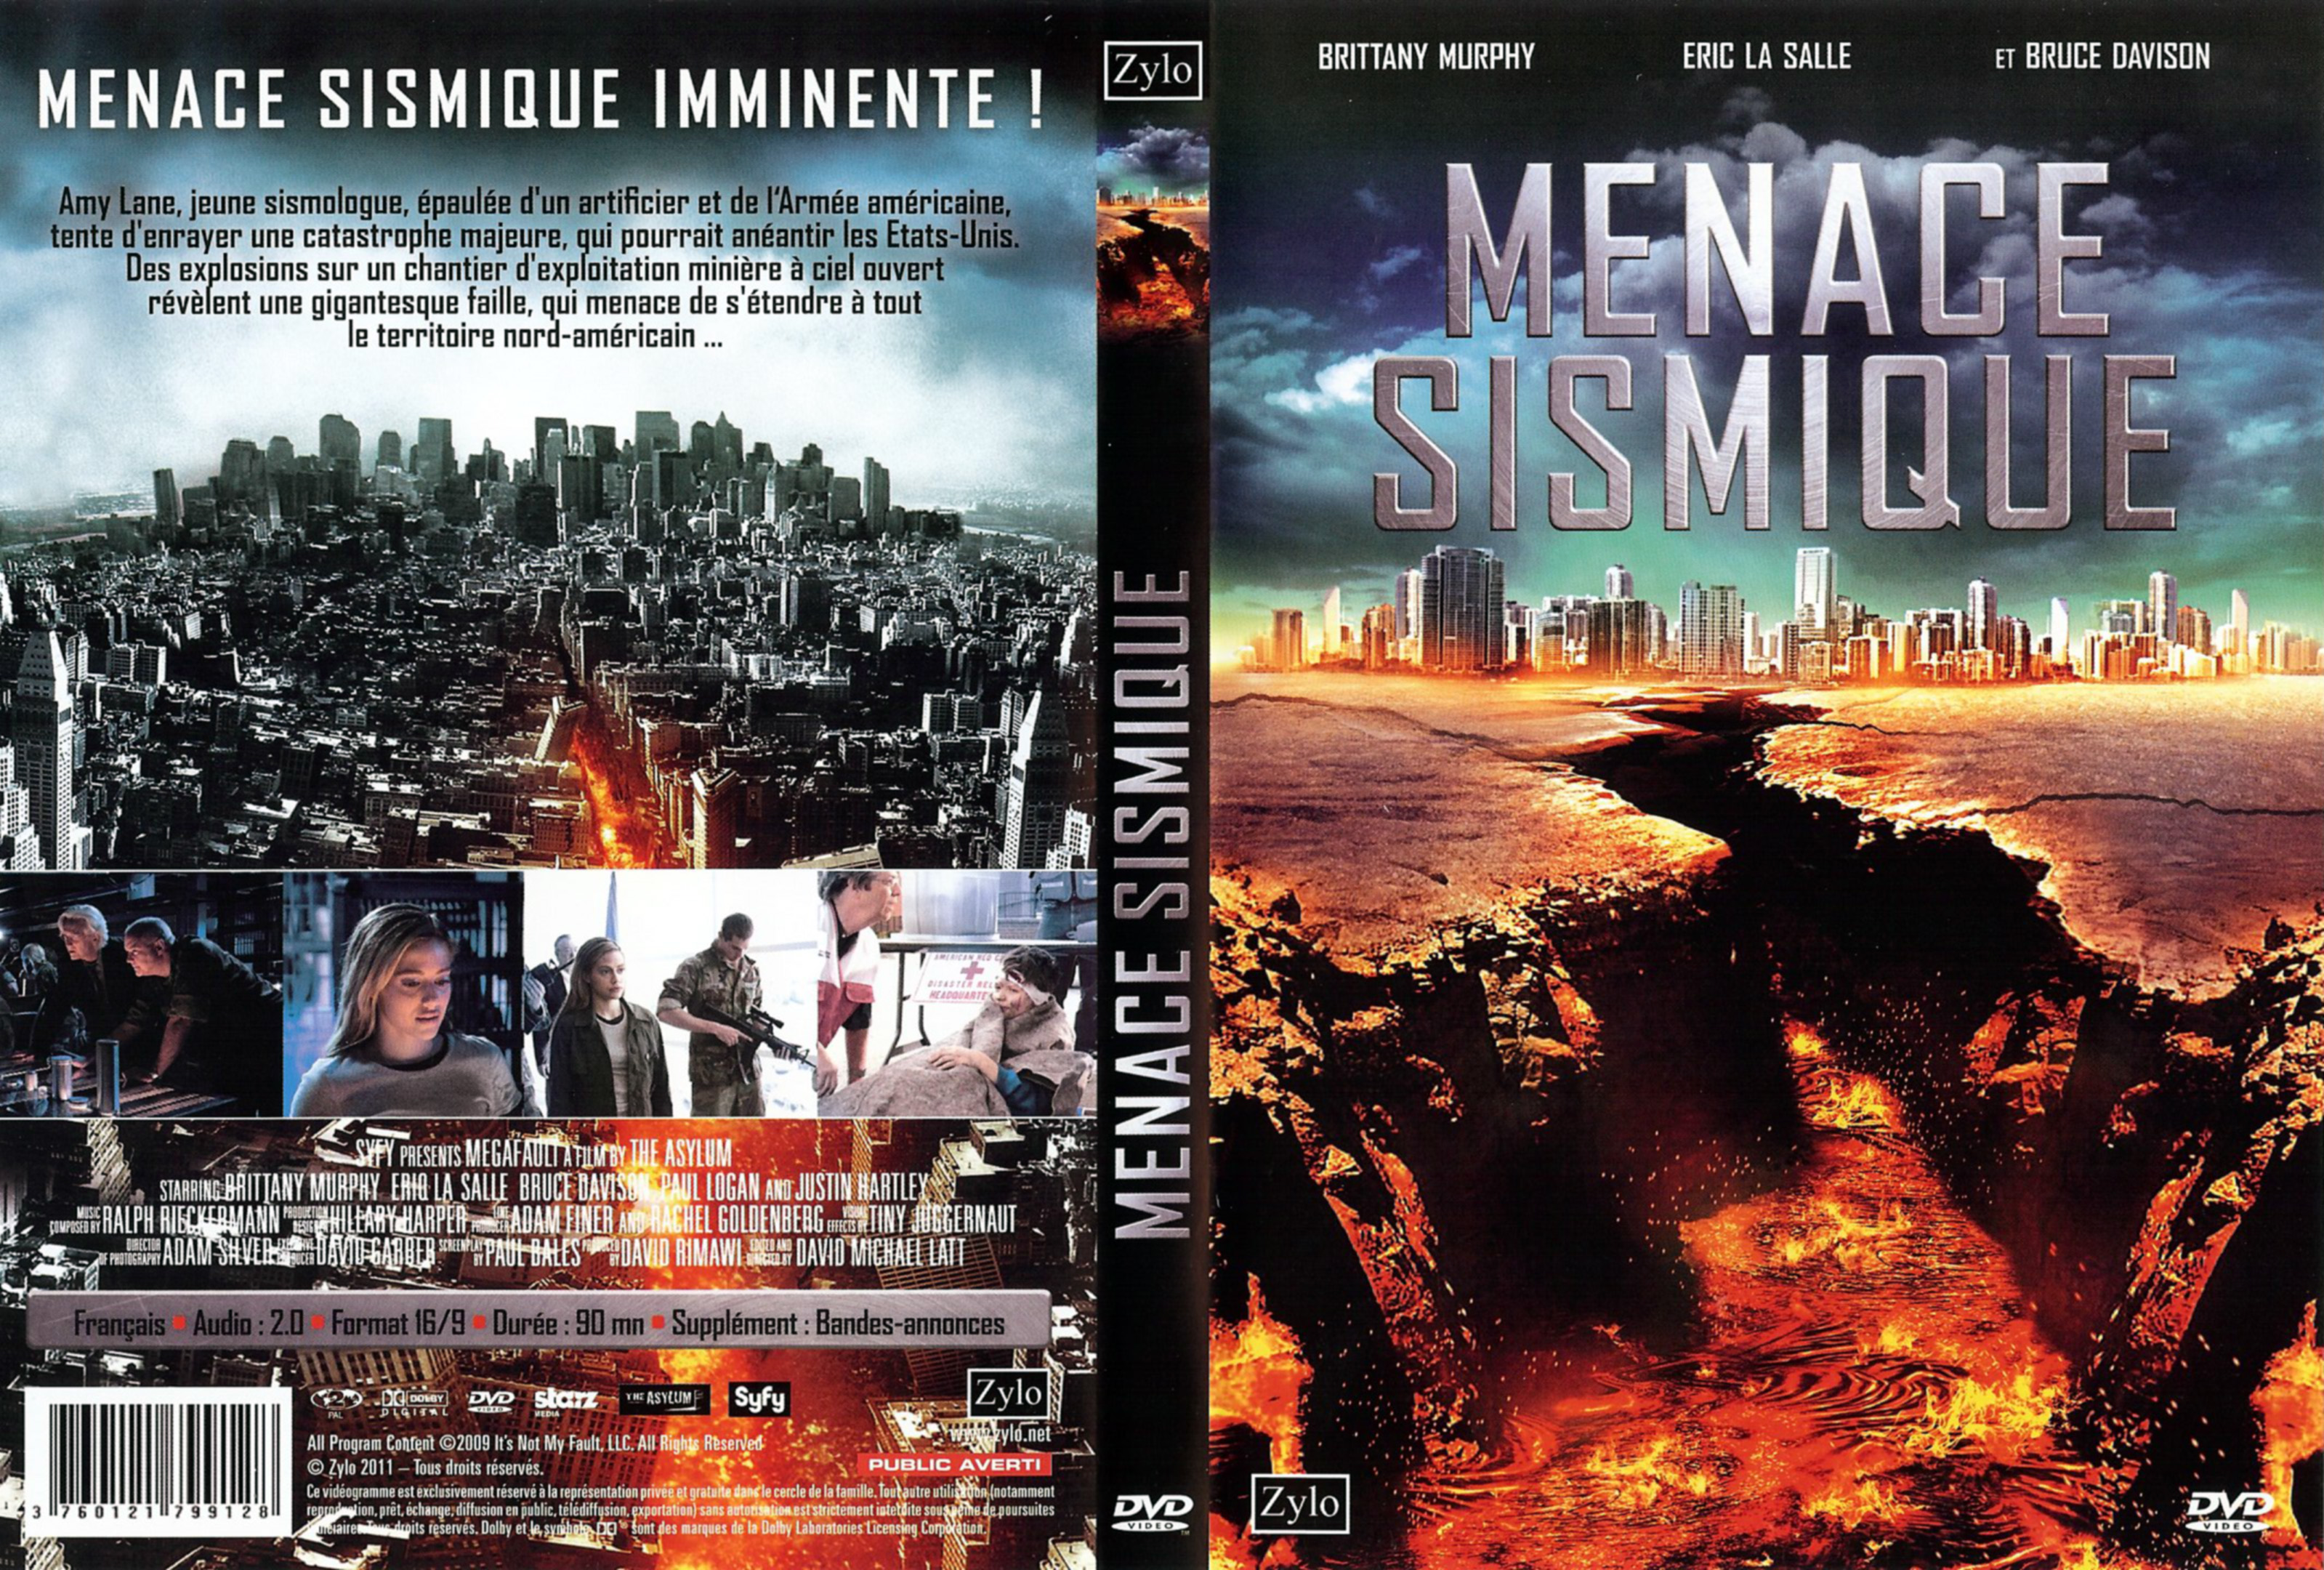 Jaquette DVD Menace sismique